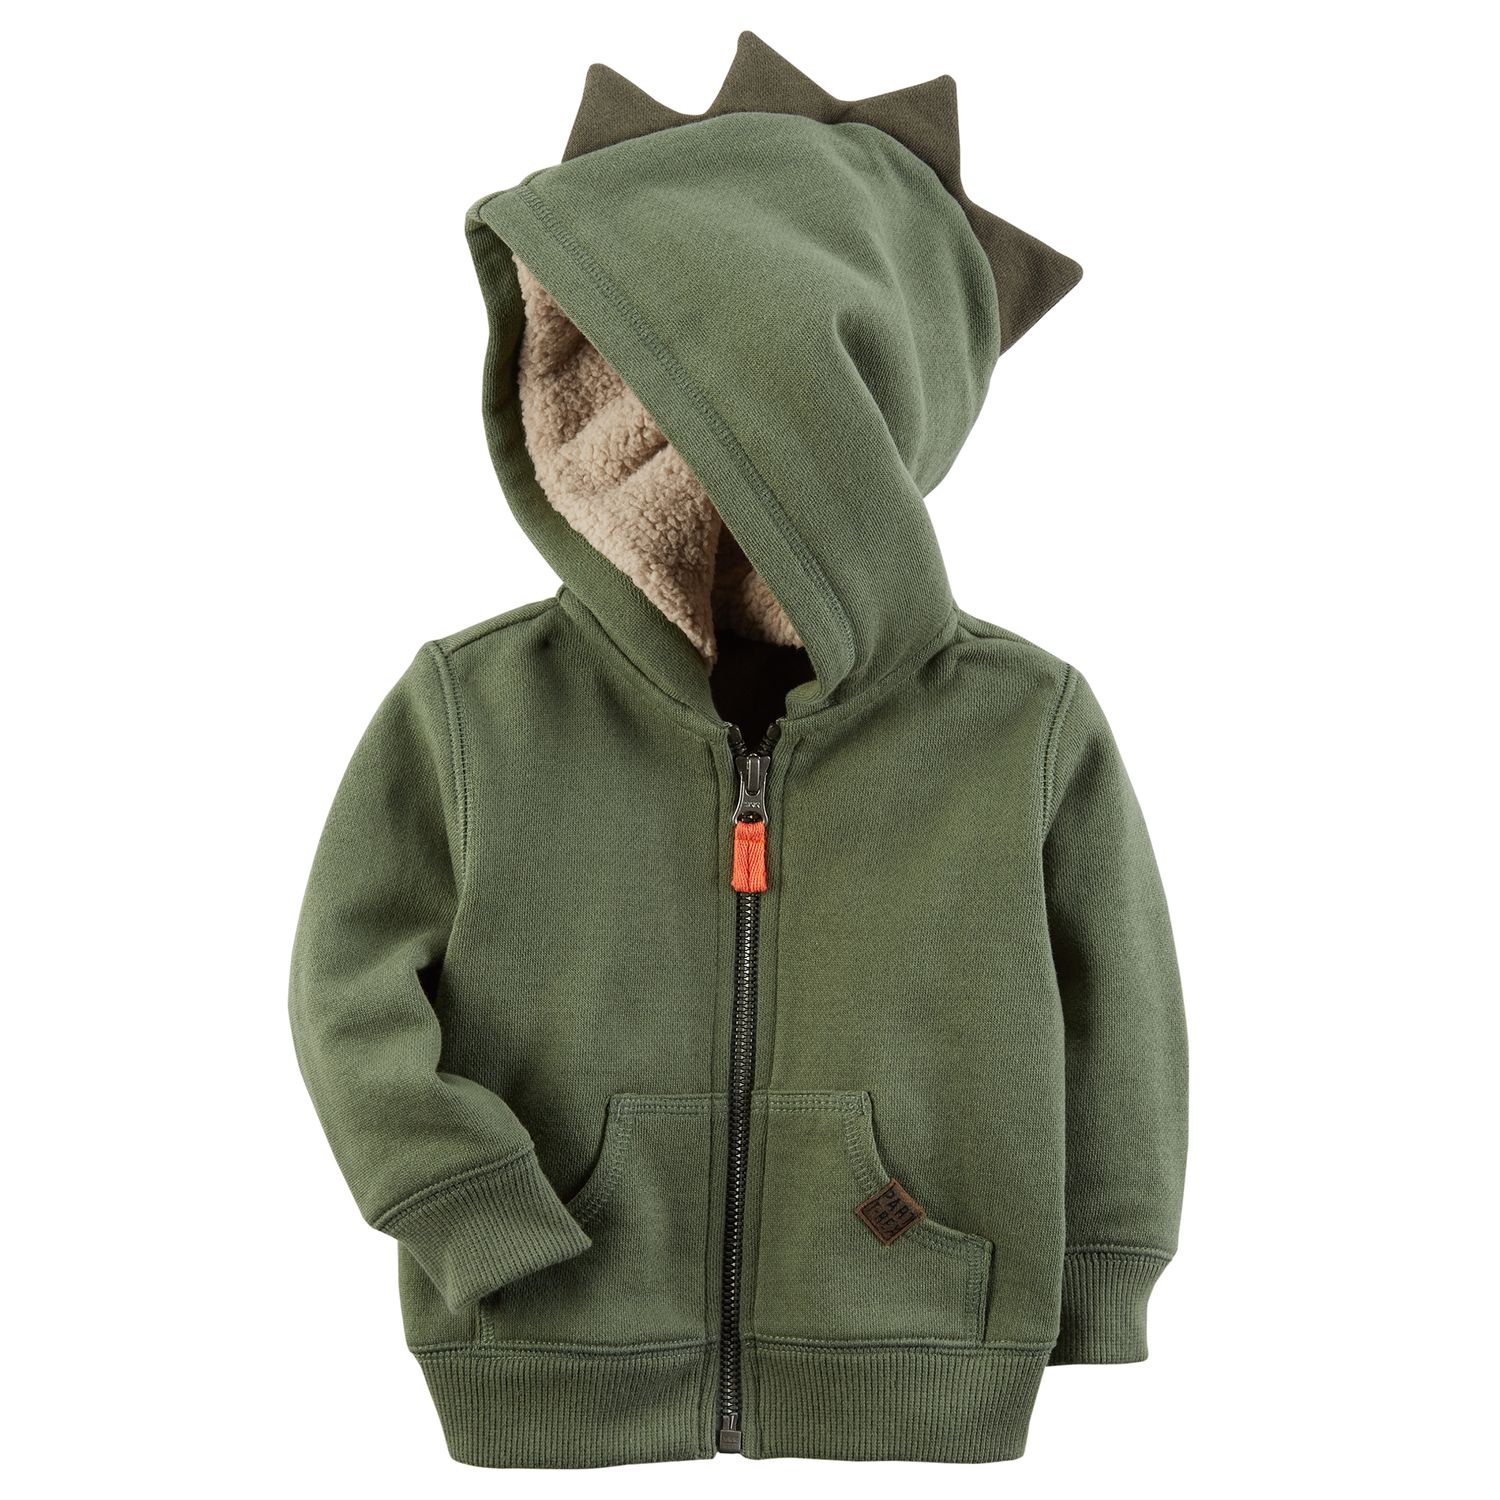 carter's dinosaur hoodie